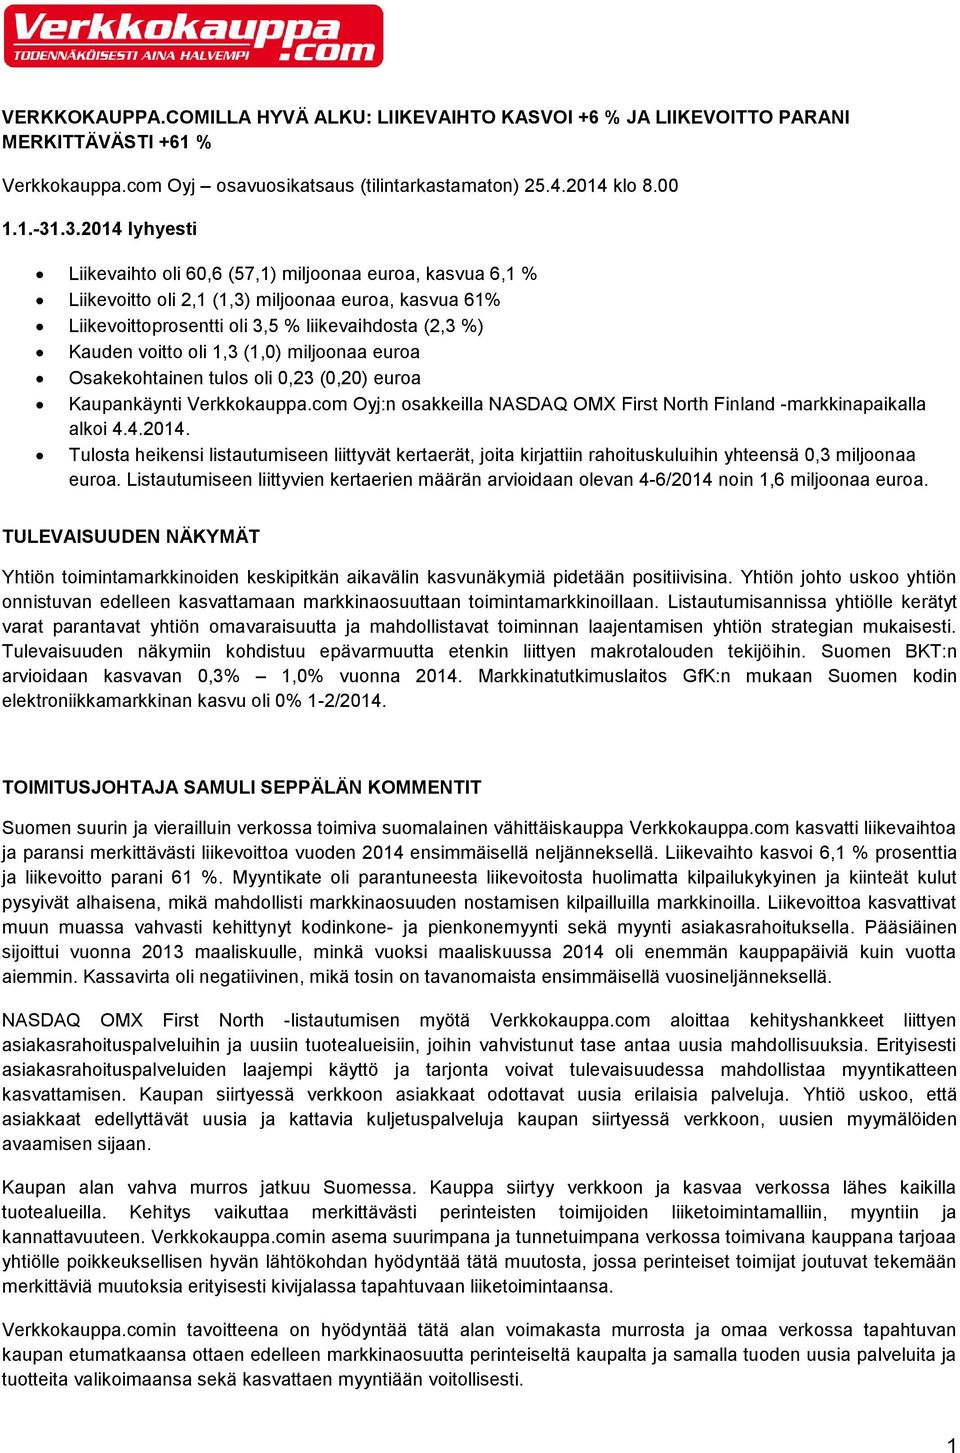 oli 1,3 (1,0) miljoonaa euroa Osakekohtainen tulos oli 0,23 (0,20) euroa Kaupankäynti Verkkokauppa.com Oyj:n osakkeilla NASDAQ OMX First North Finland -markkinapaikalla alkoi 4.4.2014.